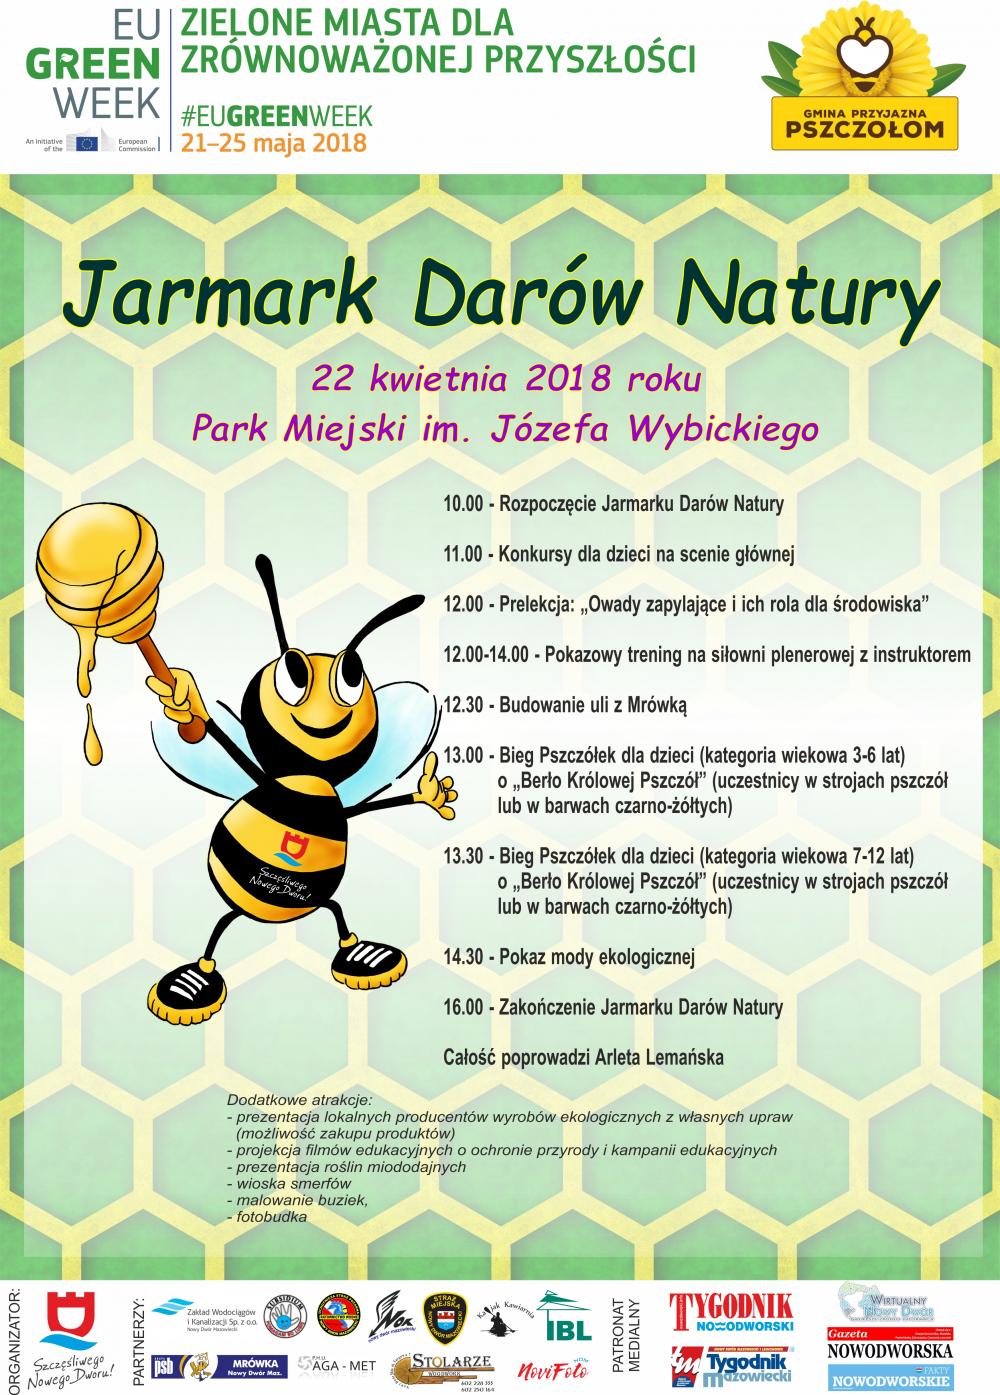 22 kwietnia 2018 roku zapraszamy do Parku Miejskiego im. Józefa Wybickiego na Jarmark Darów Natury.